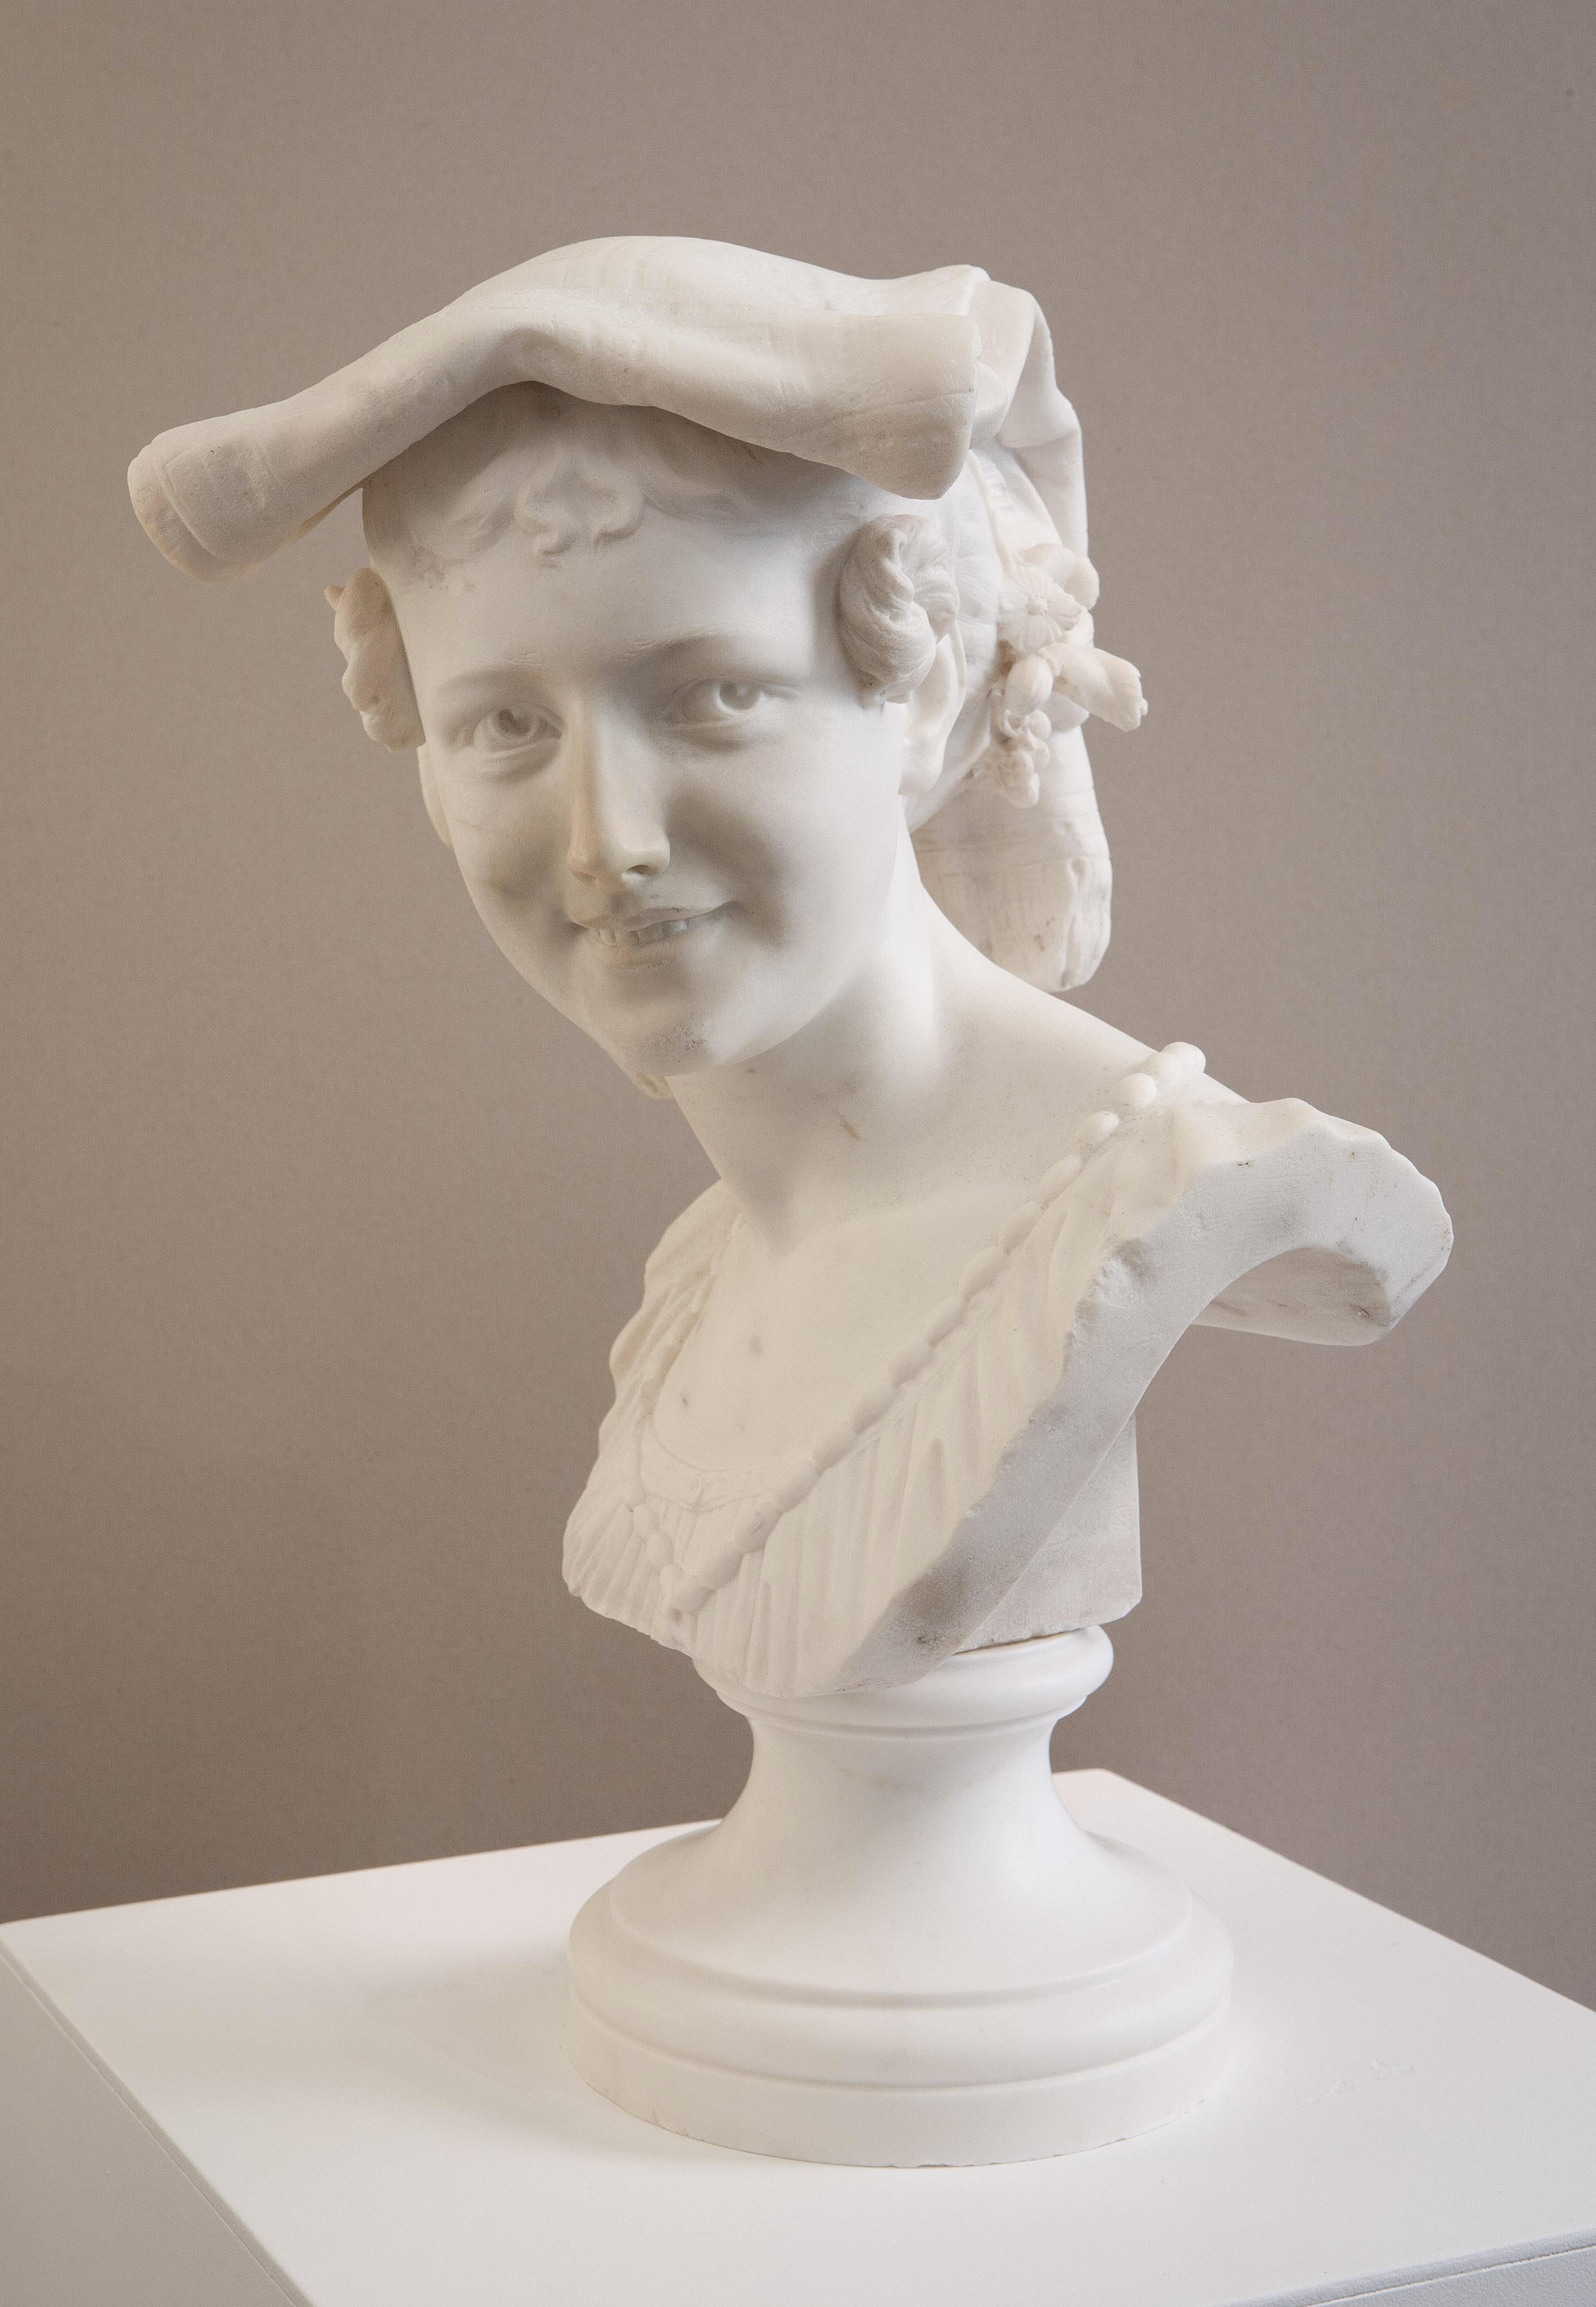 Le Rieuse napolitain - Gray Figurative Sculpture by Jean-Baptiste Carpeaux (1827-1875)